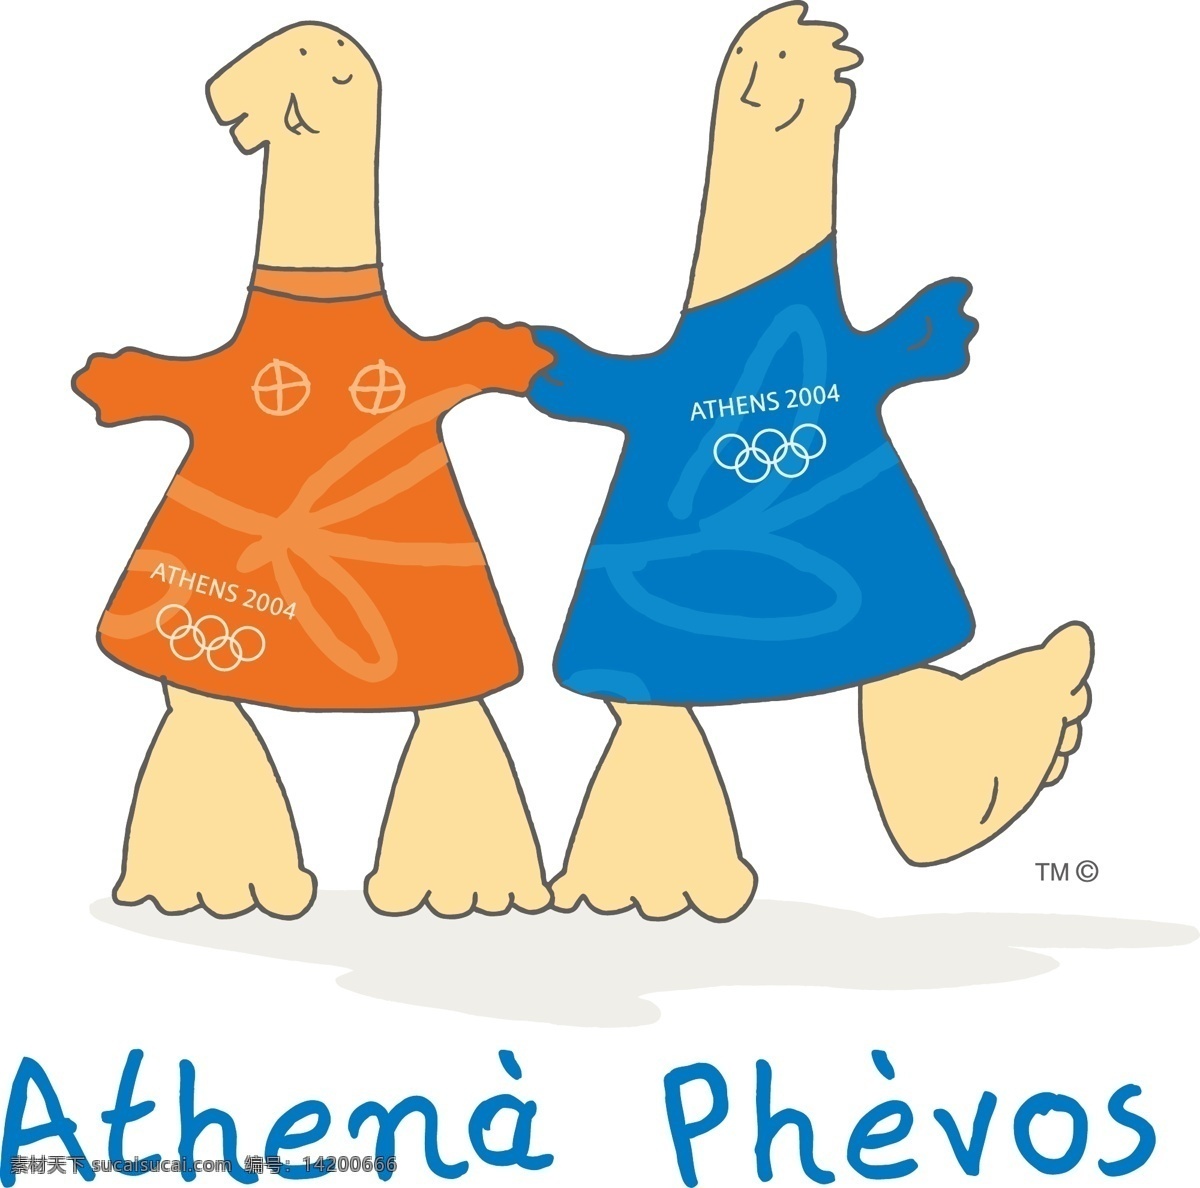 2004 年 雅典 奥运会 吉祥物 雅典奥运会 雅典娜 费沃斯 希腊 公共标识标志 标识标志图标 矢量